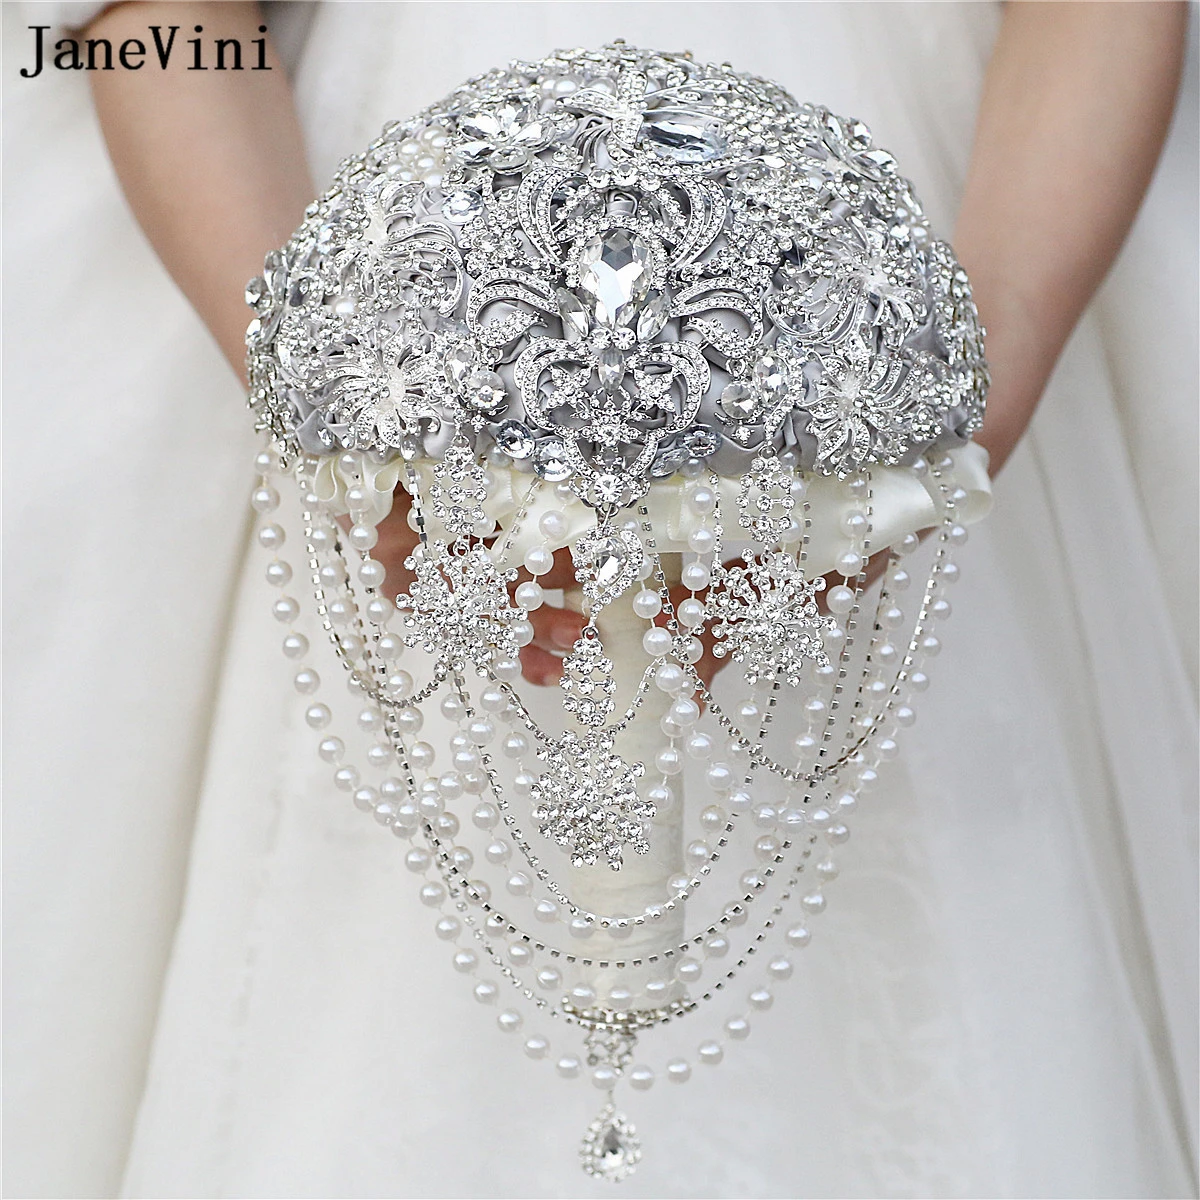 Janevini funkelnde silberne Strass steine Kristall Braut sträuße künstliche Satin Rosen maßge schneiderte Hochzeits strauß Blume für Braut